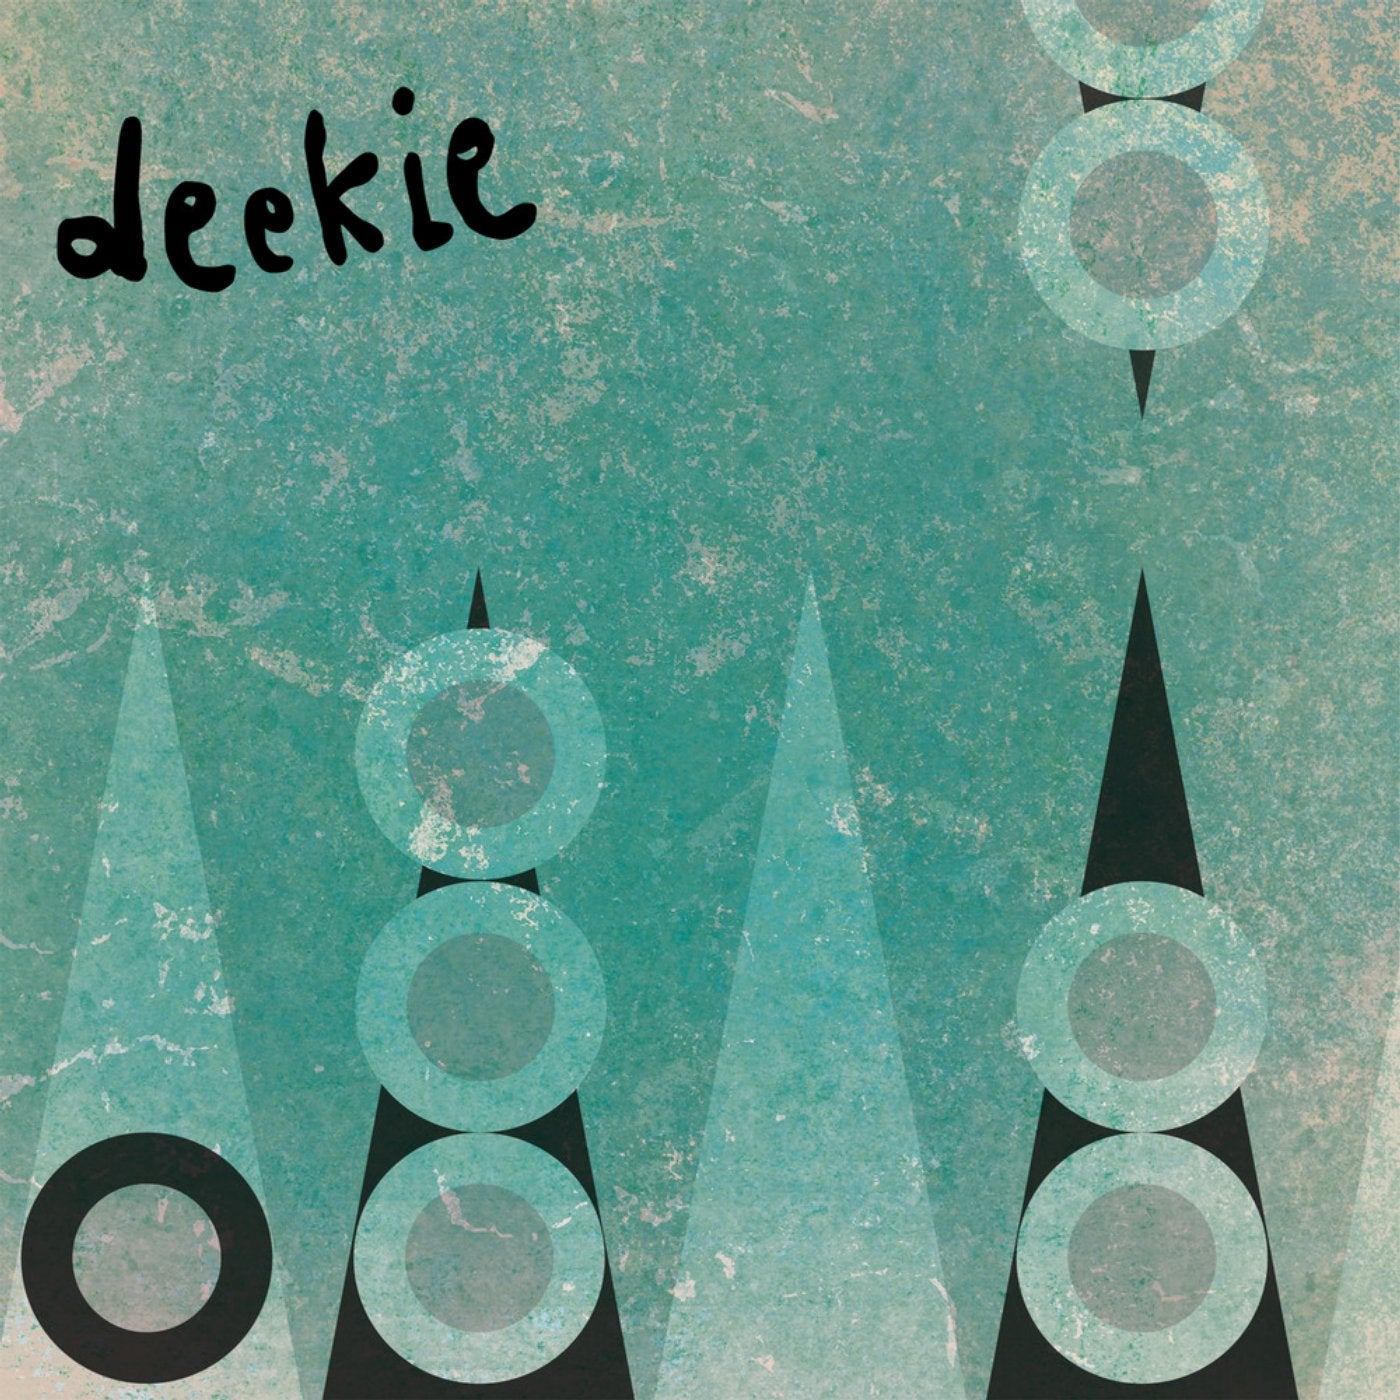 Deekie music download - Beatport